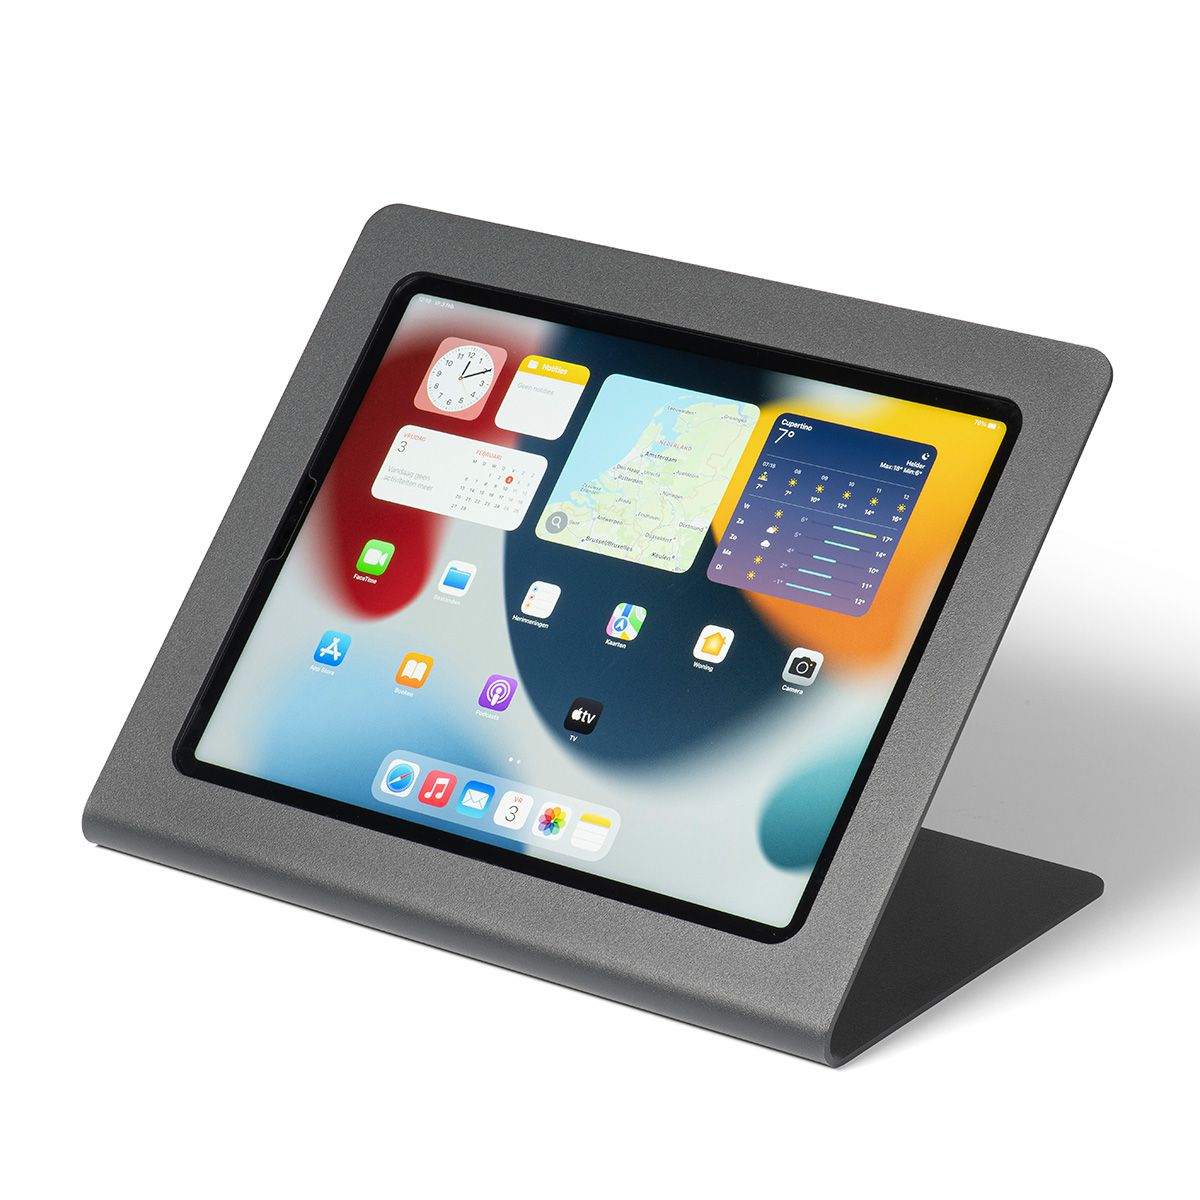 Tablet Tischständer verstellbar für Ipad Pro und andere Tablets